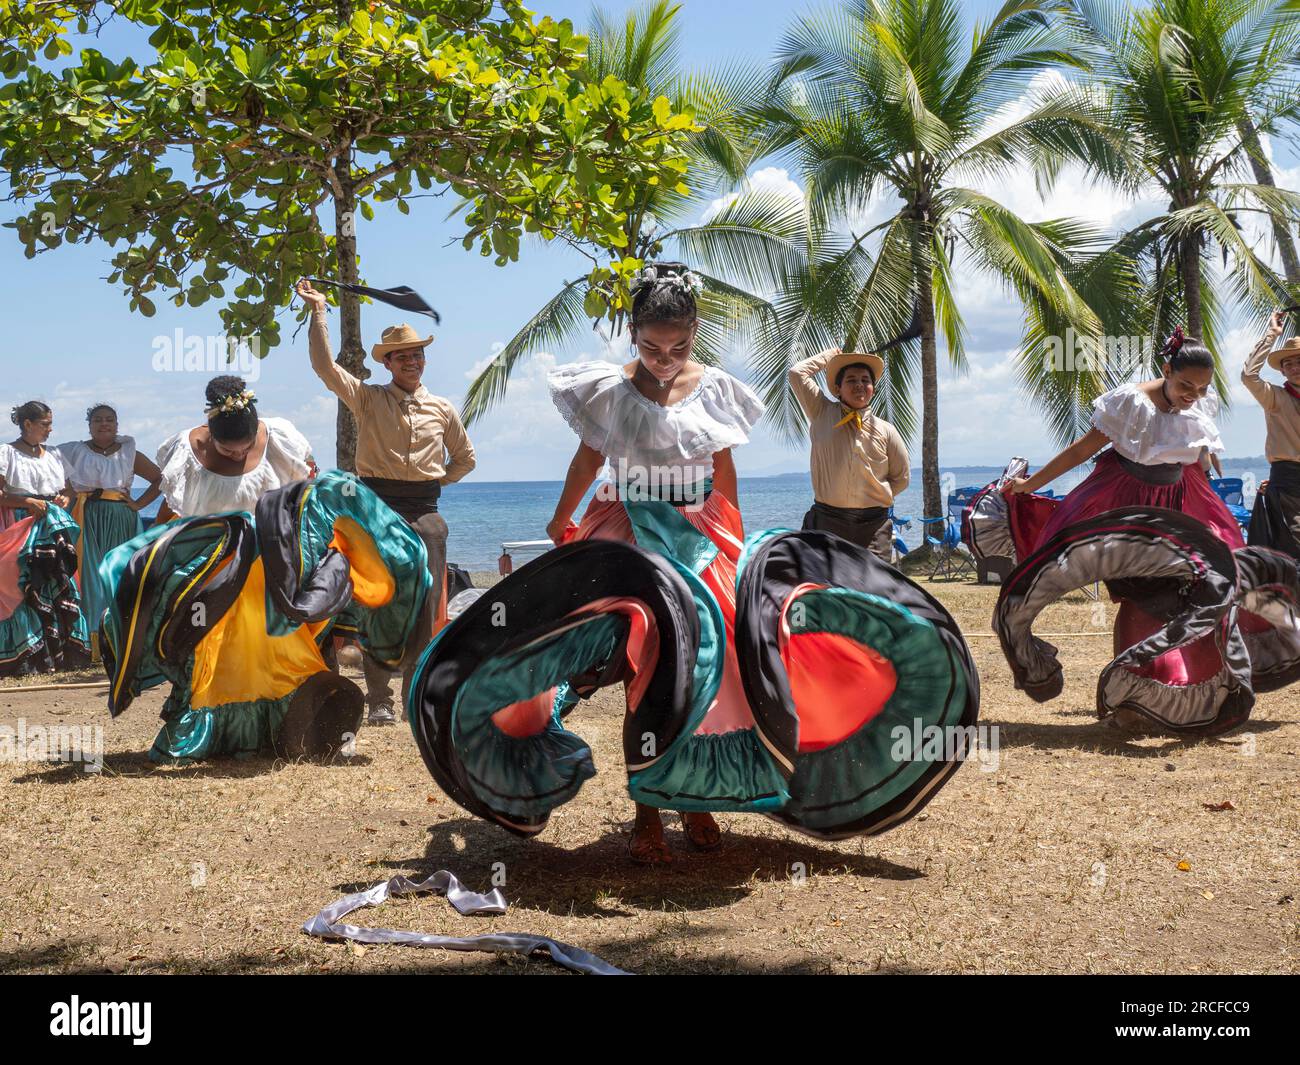 Un gruppo di giovani ballerini costaricani in abiti tradizionali si esibiscono a Playa Blanca, El Golfito, Costa Rica. Foto Stock